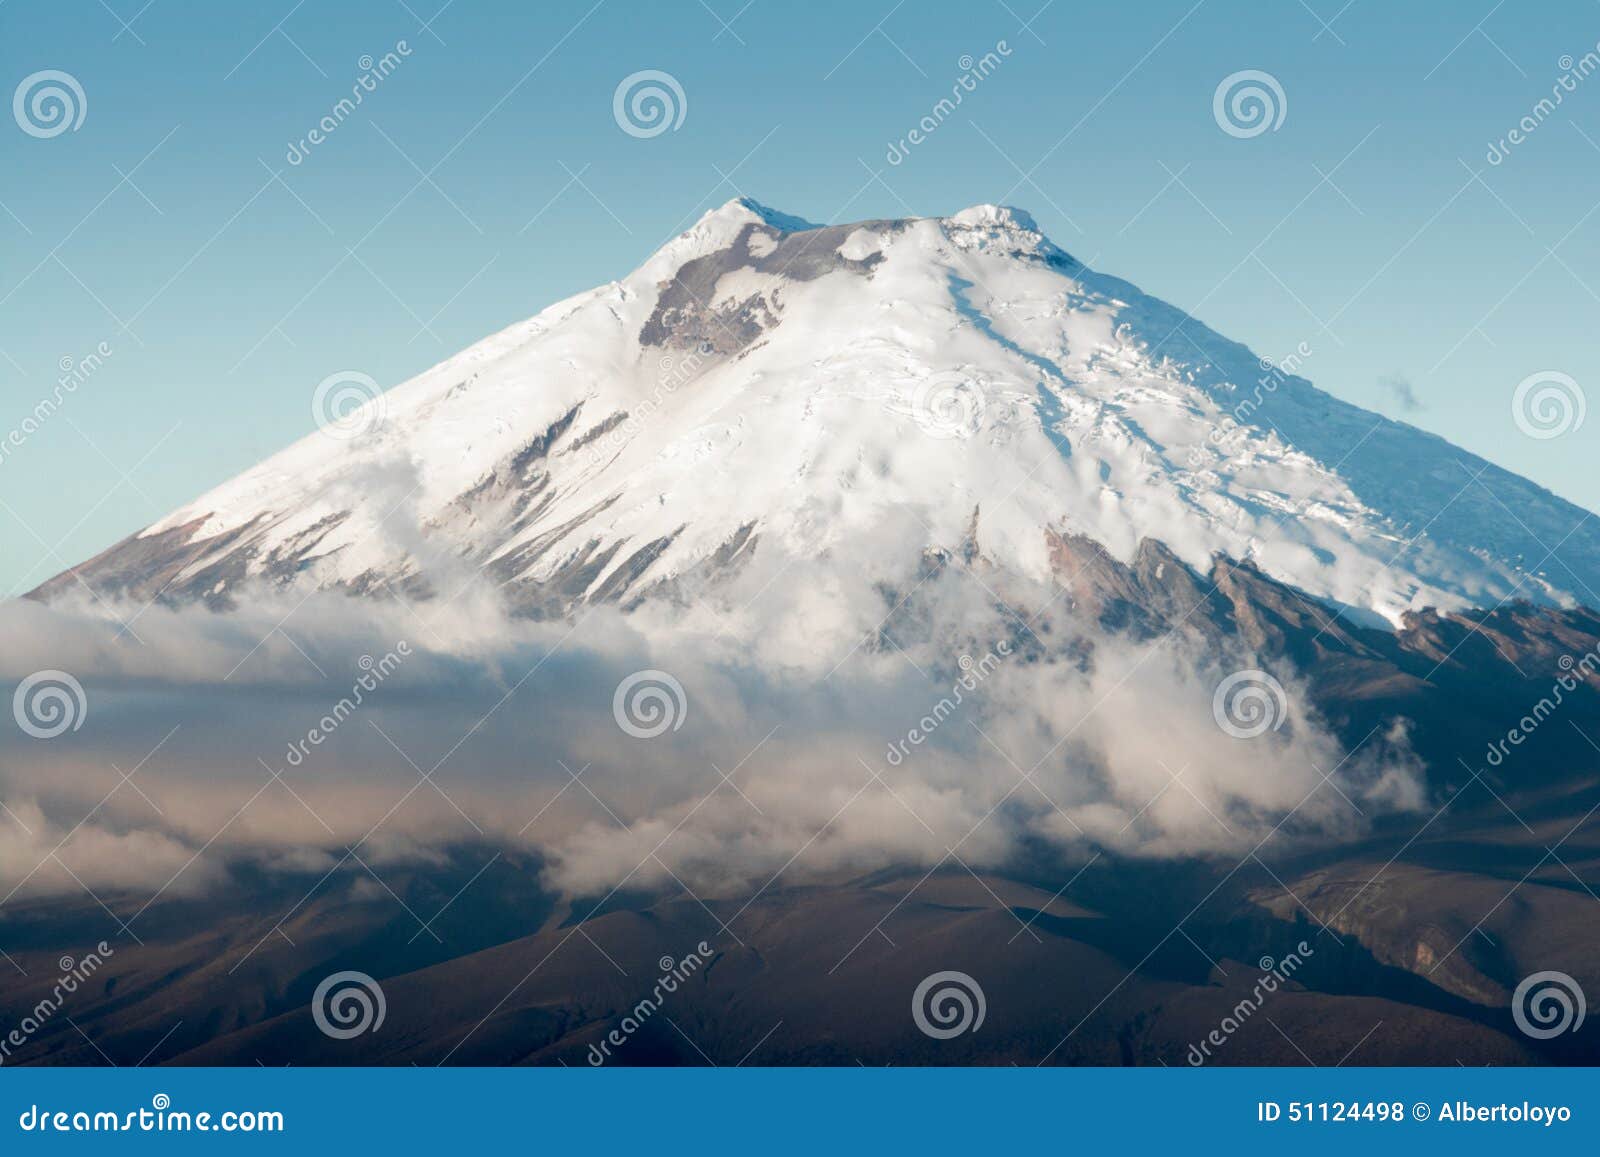 cotopaxi volcano, ecuador